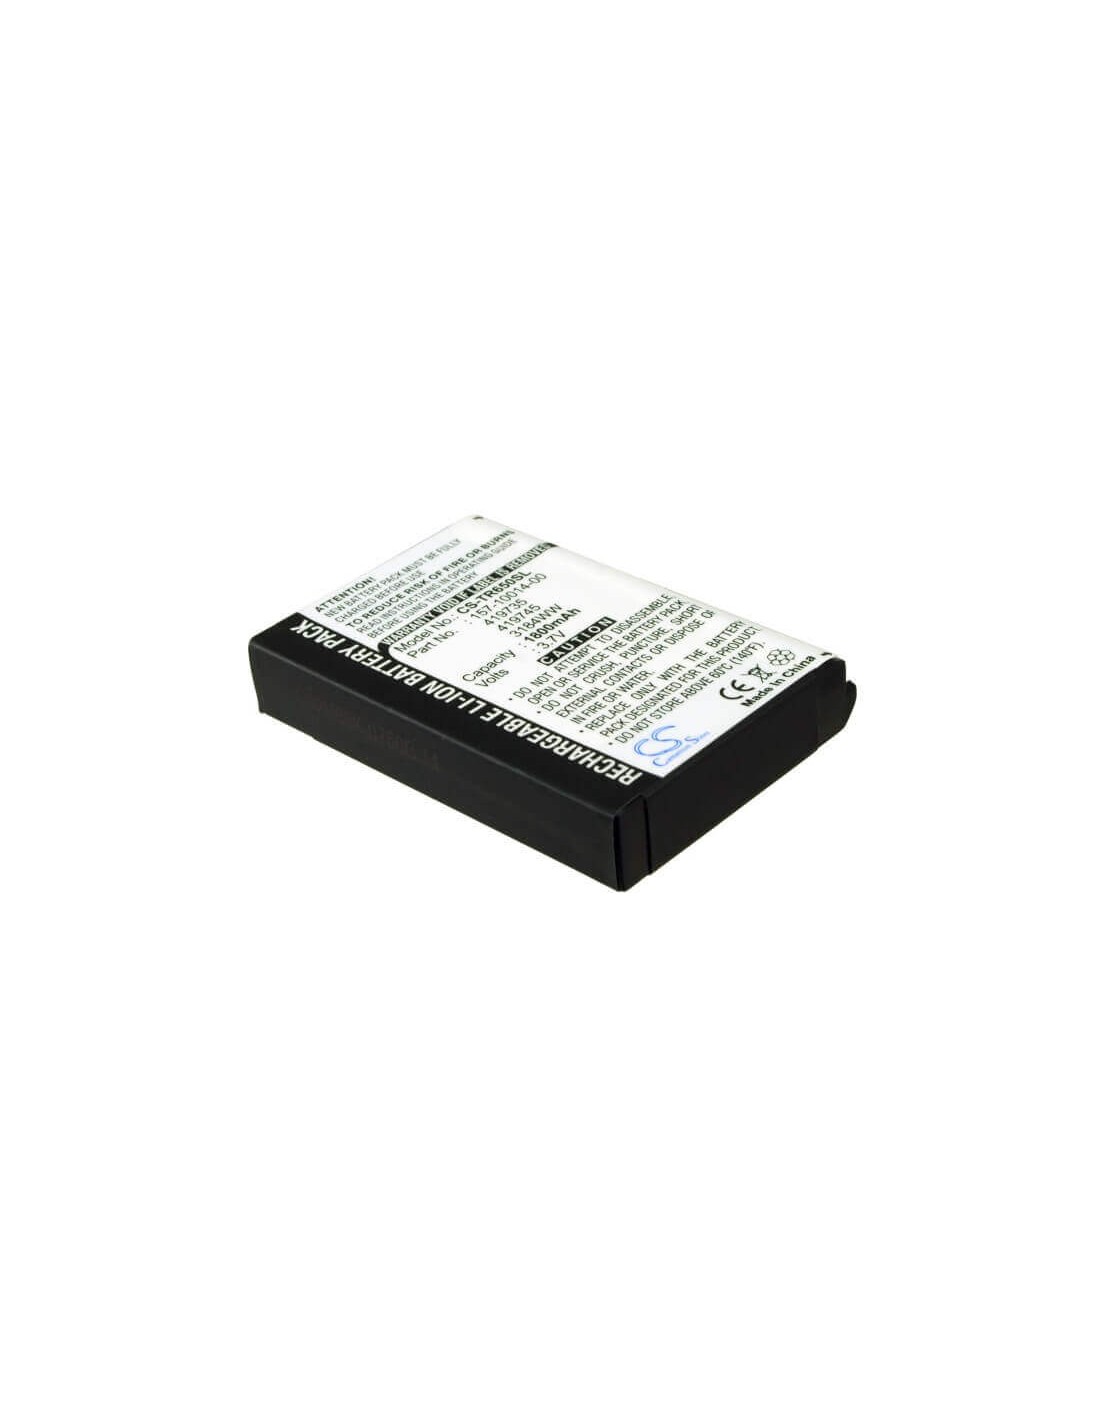 Battery for Cingular Treo 650 3.7V, 1800mAh - 6.66Wh